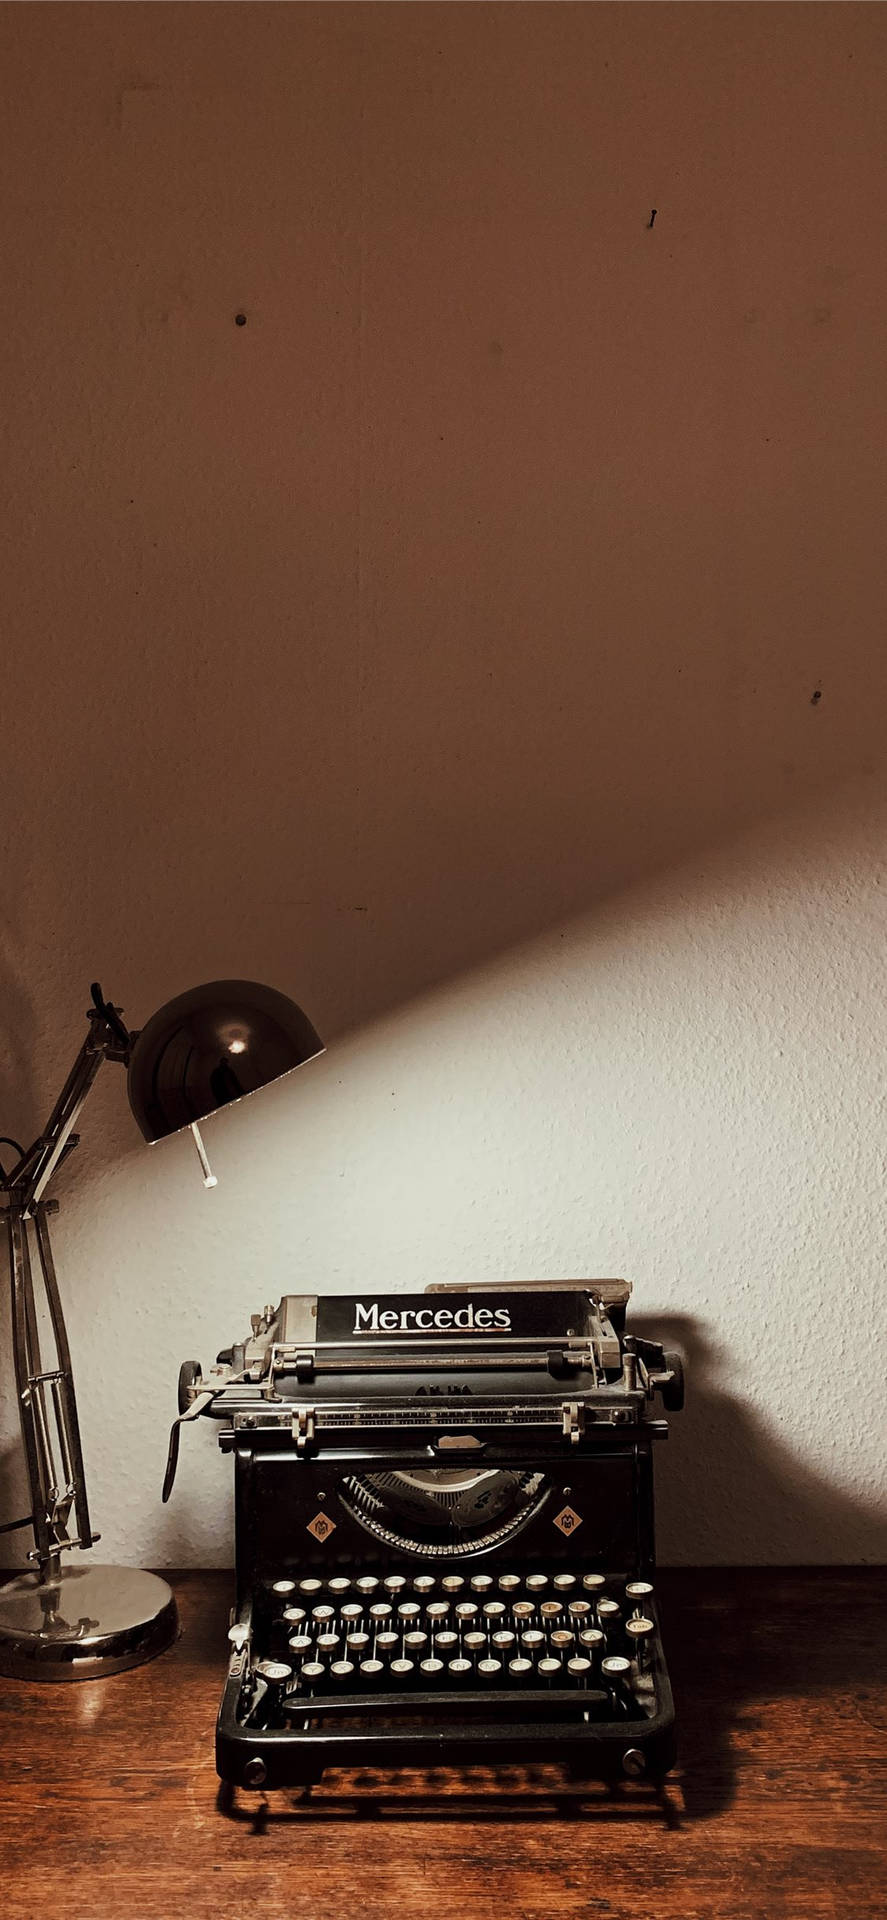 Iphone Desk Typewriter Wallpaper